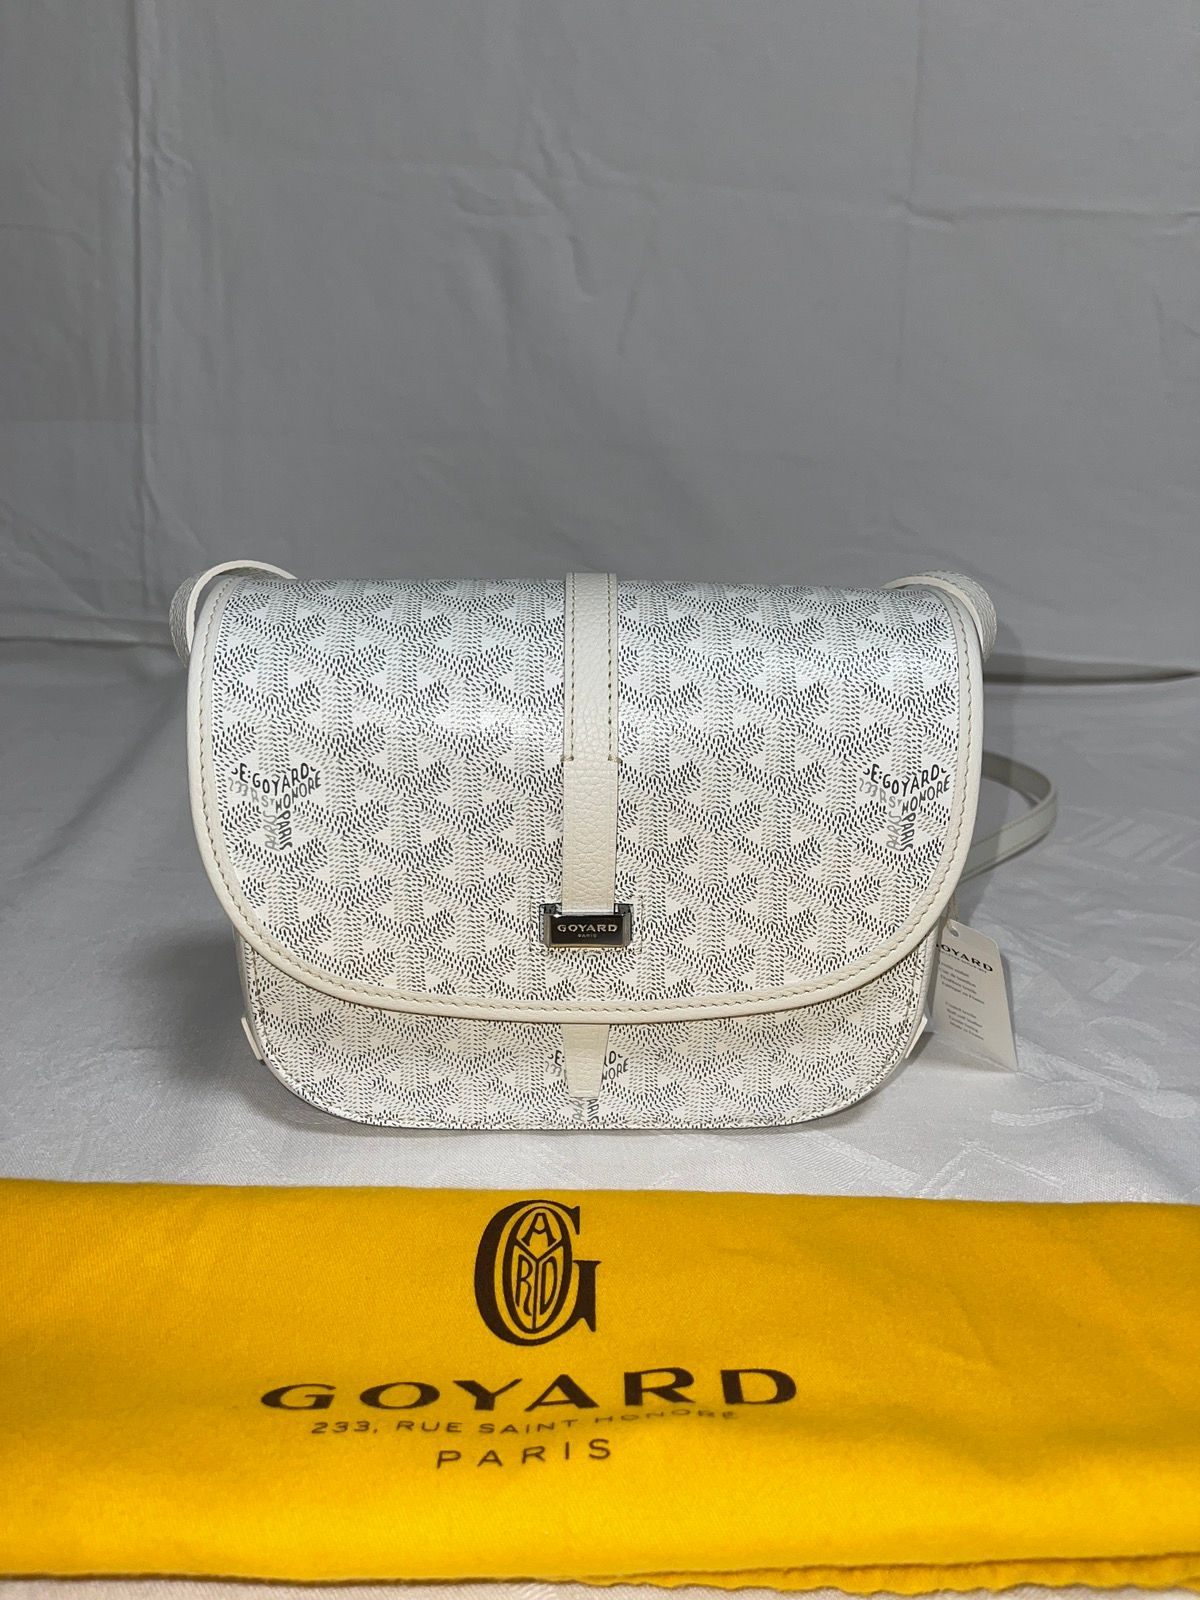 Belvedere Pm Bag - For Sale on 1stDibs  belvedere pm bag price, goyard belvedere  pm price, belvedere pm bag price 2022